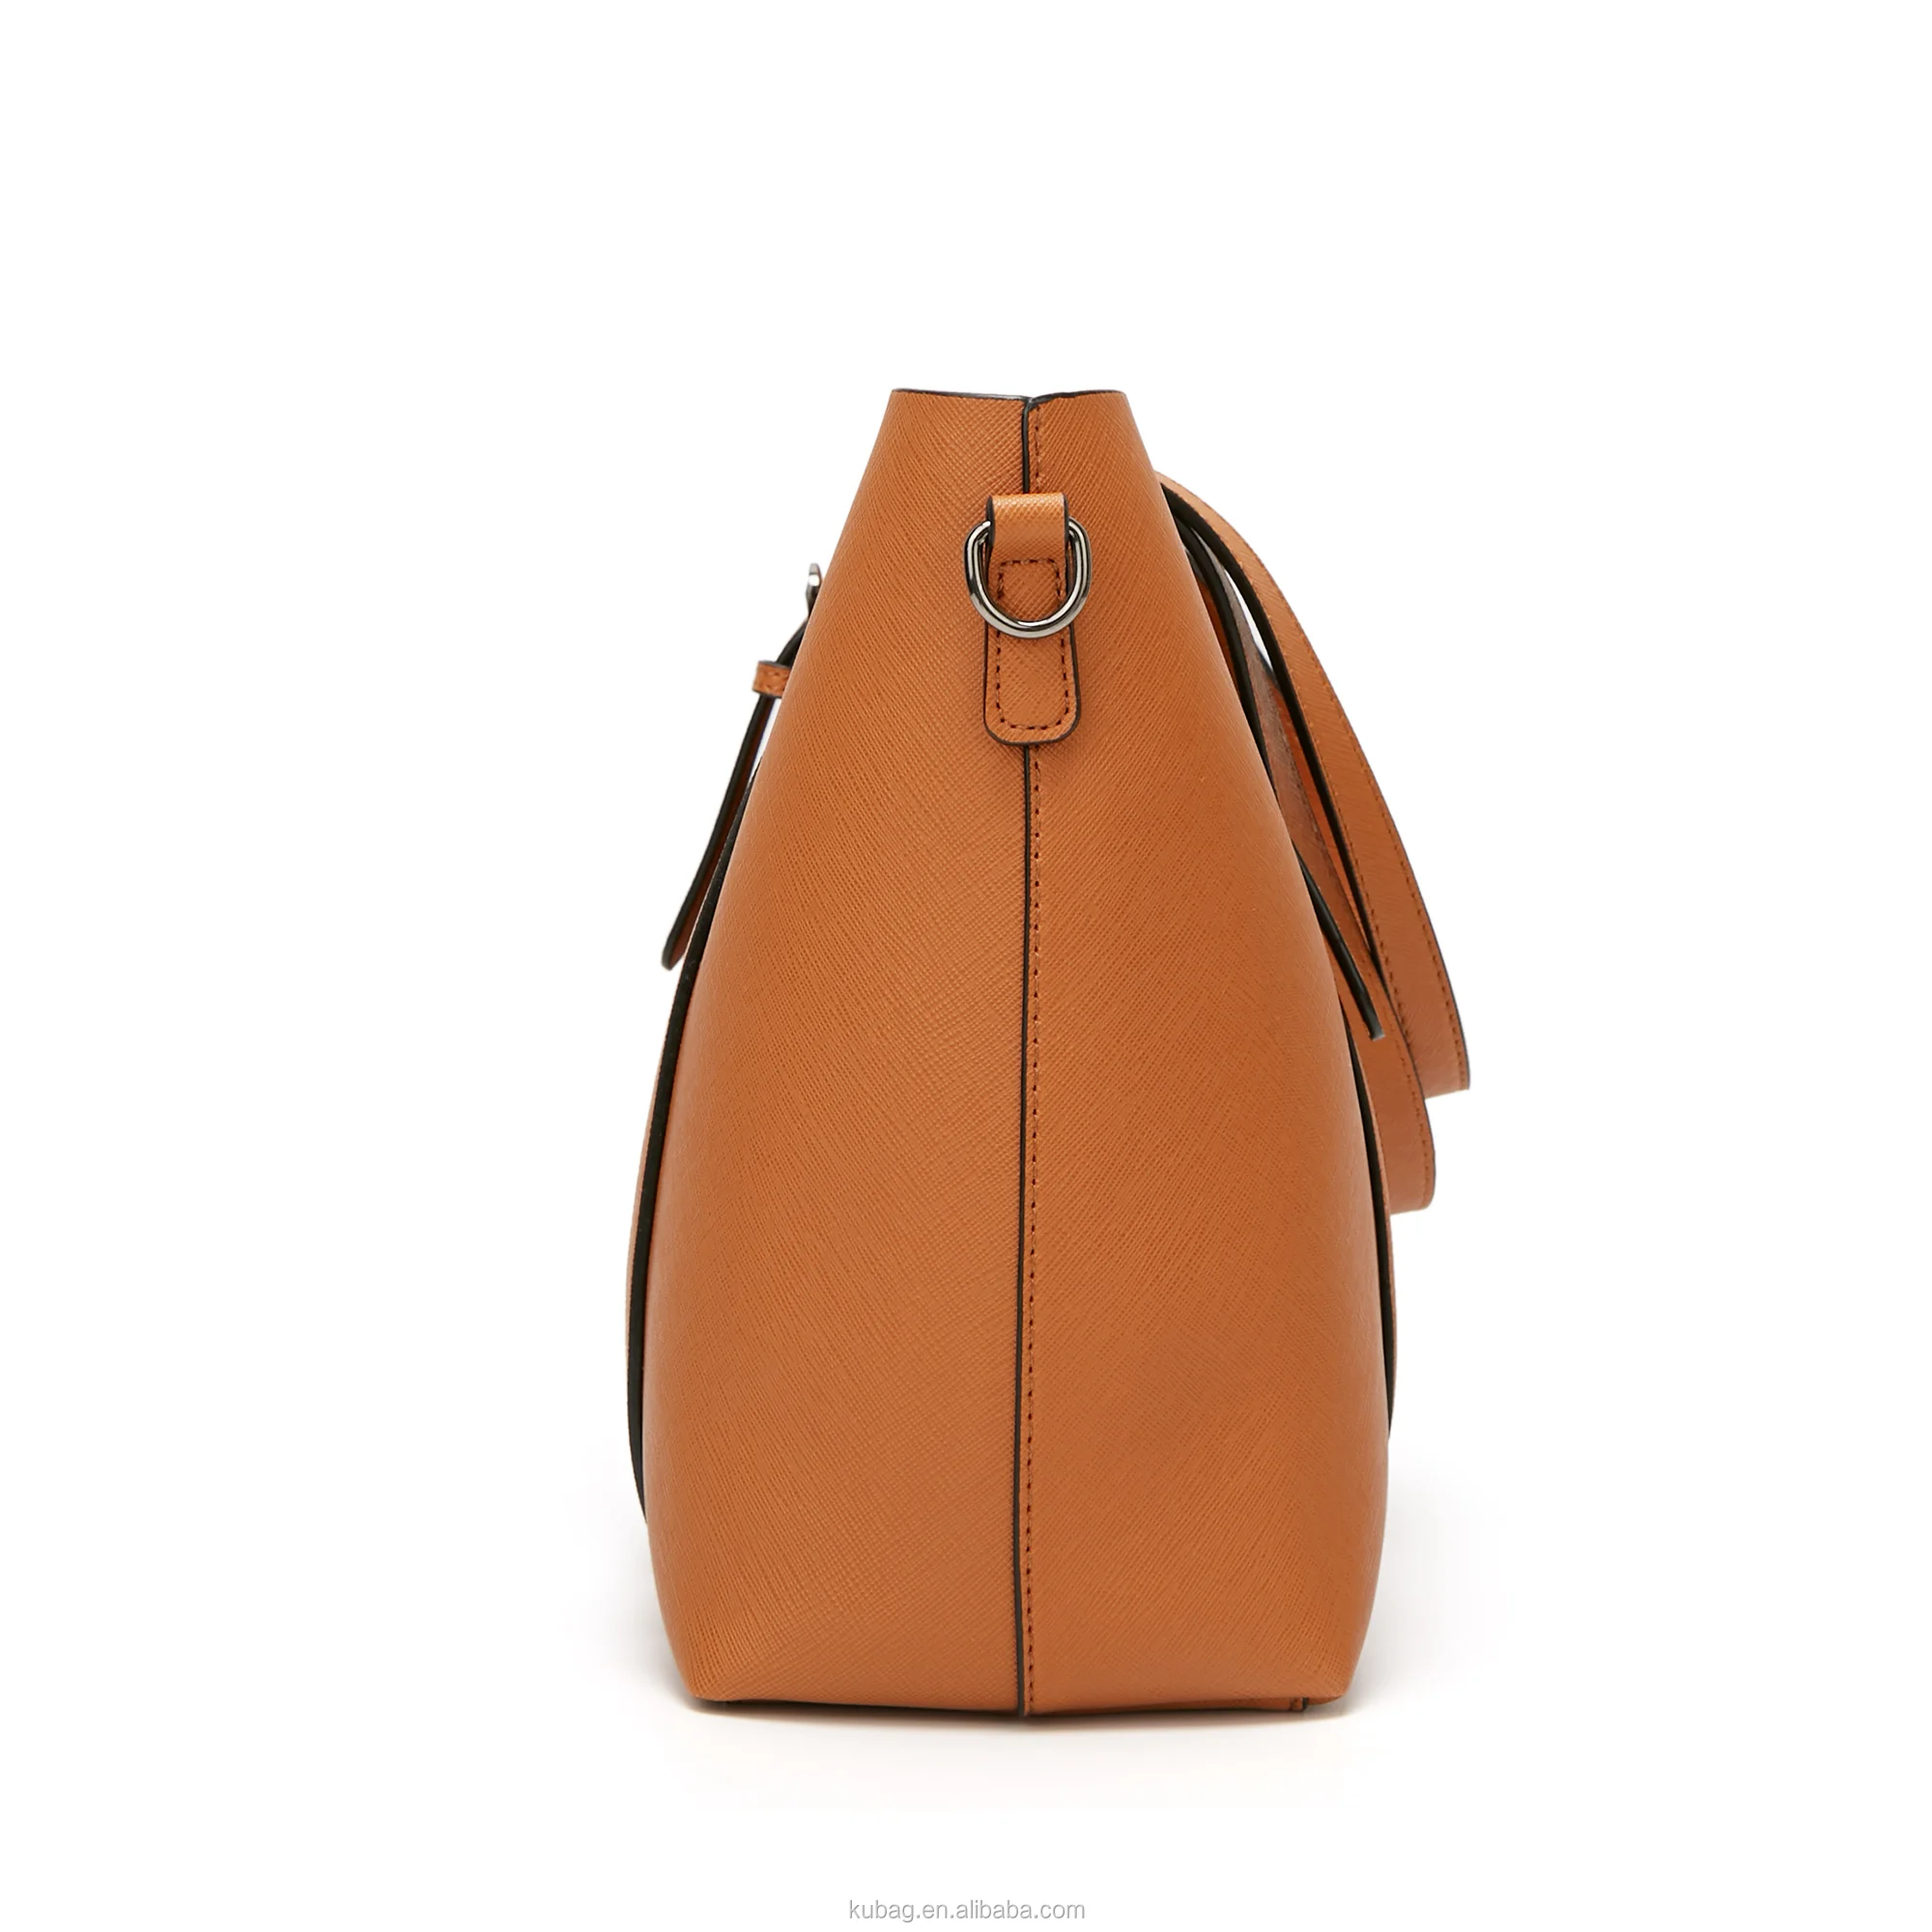 saffiano leather bag